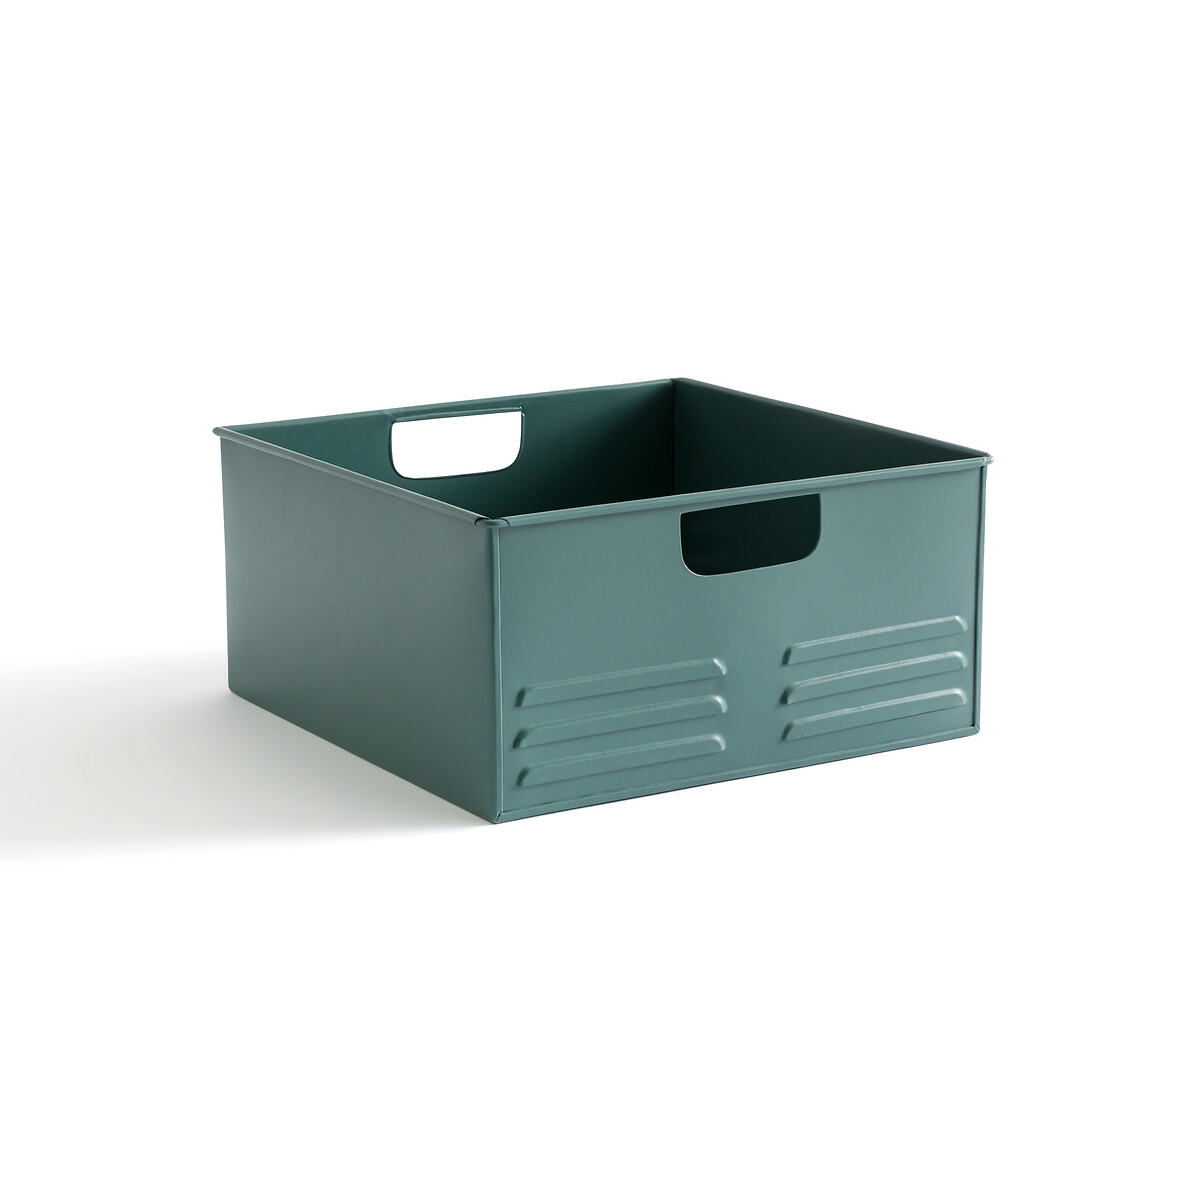 Ящик Для хранения из металла Hiba единый размер зеленый